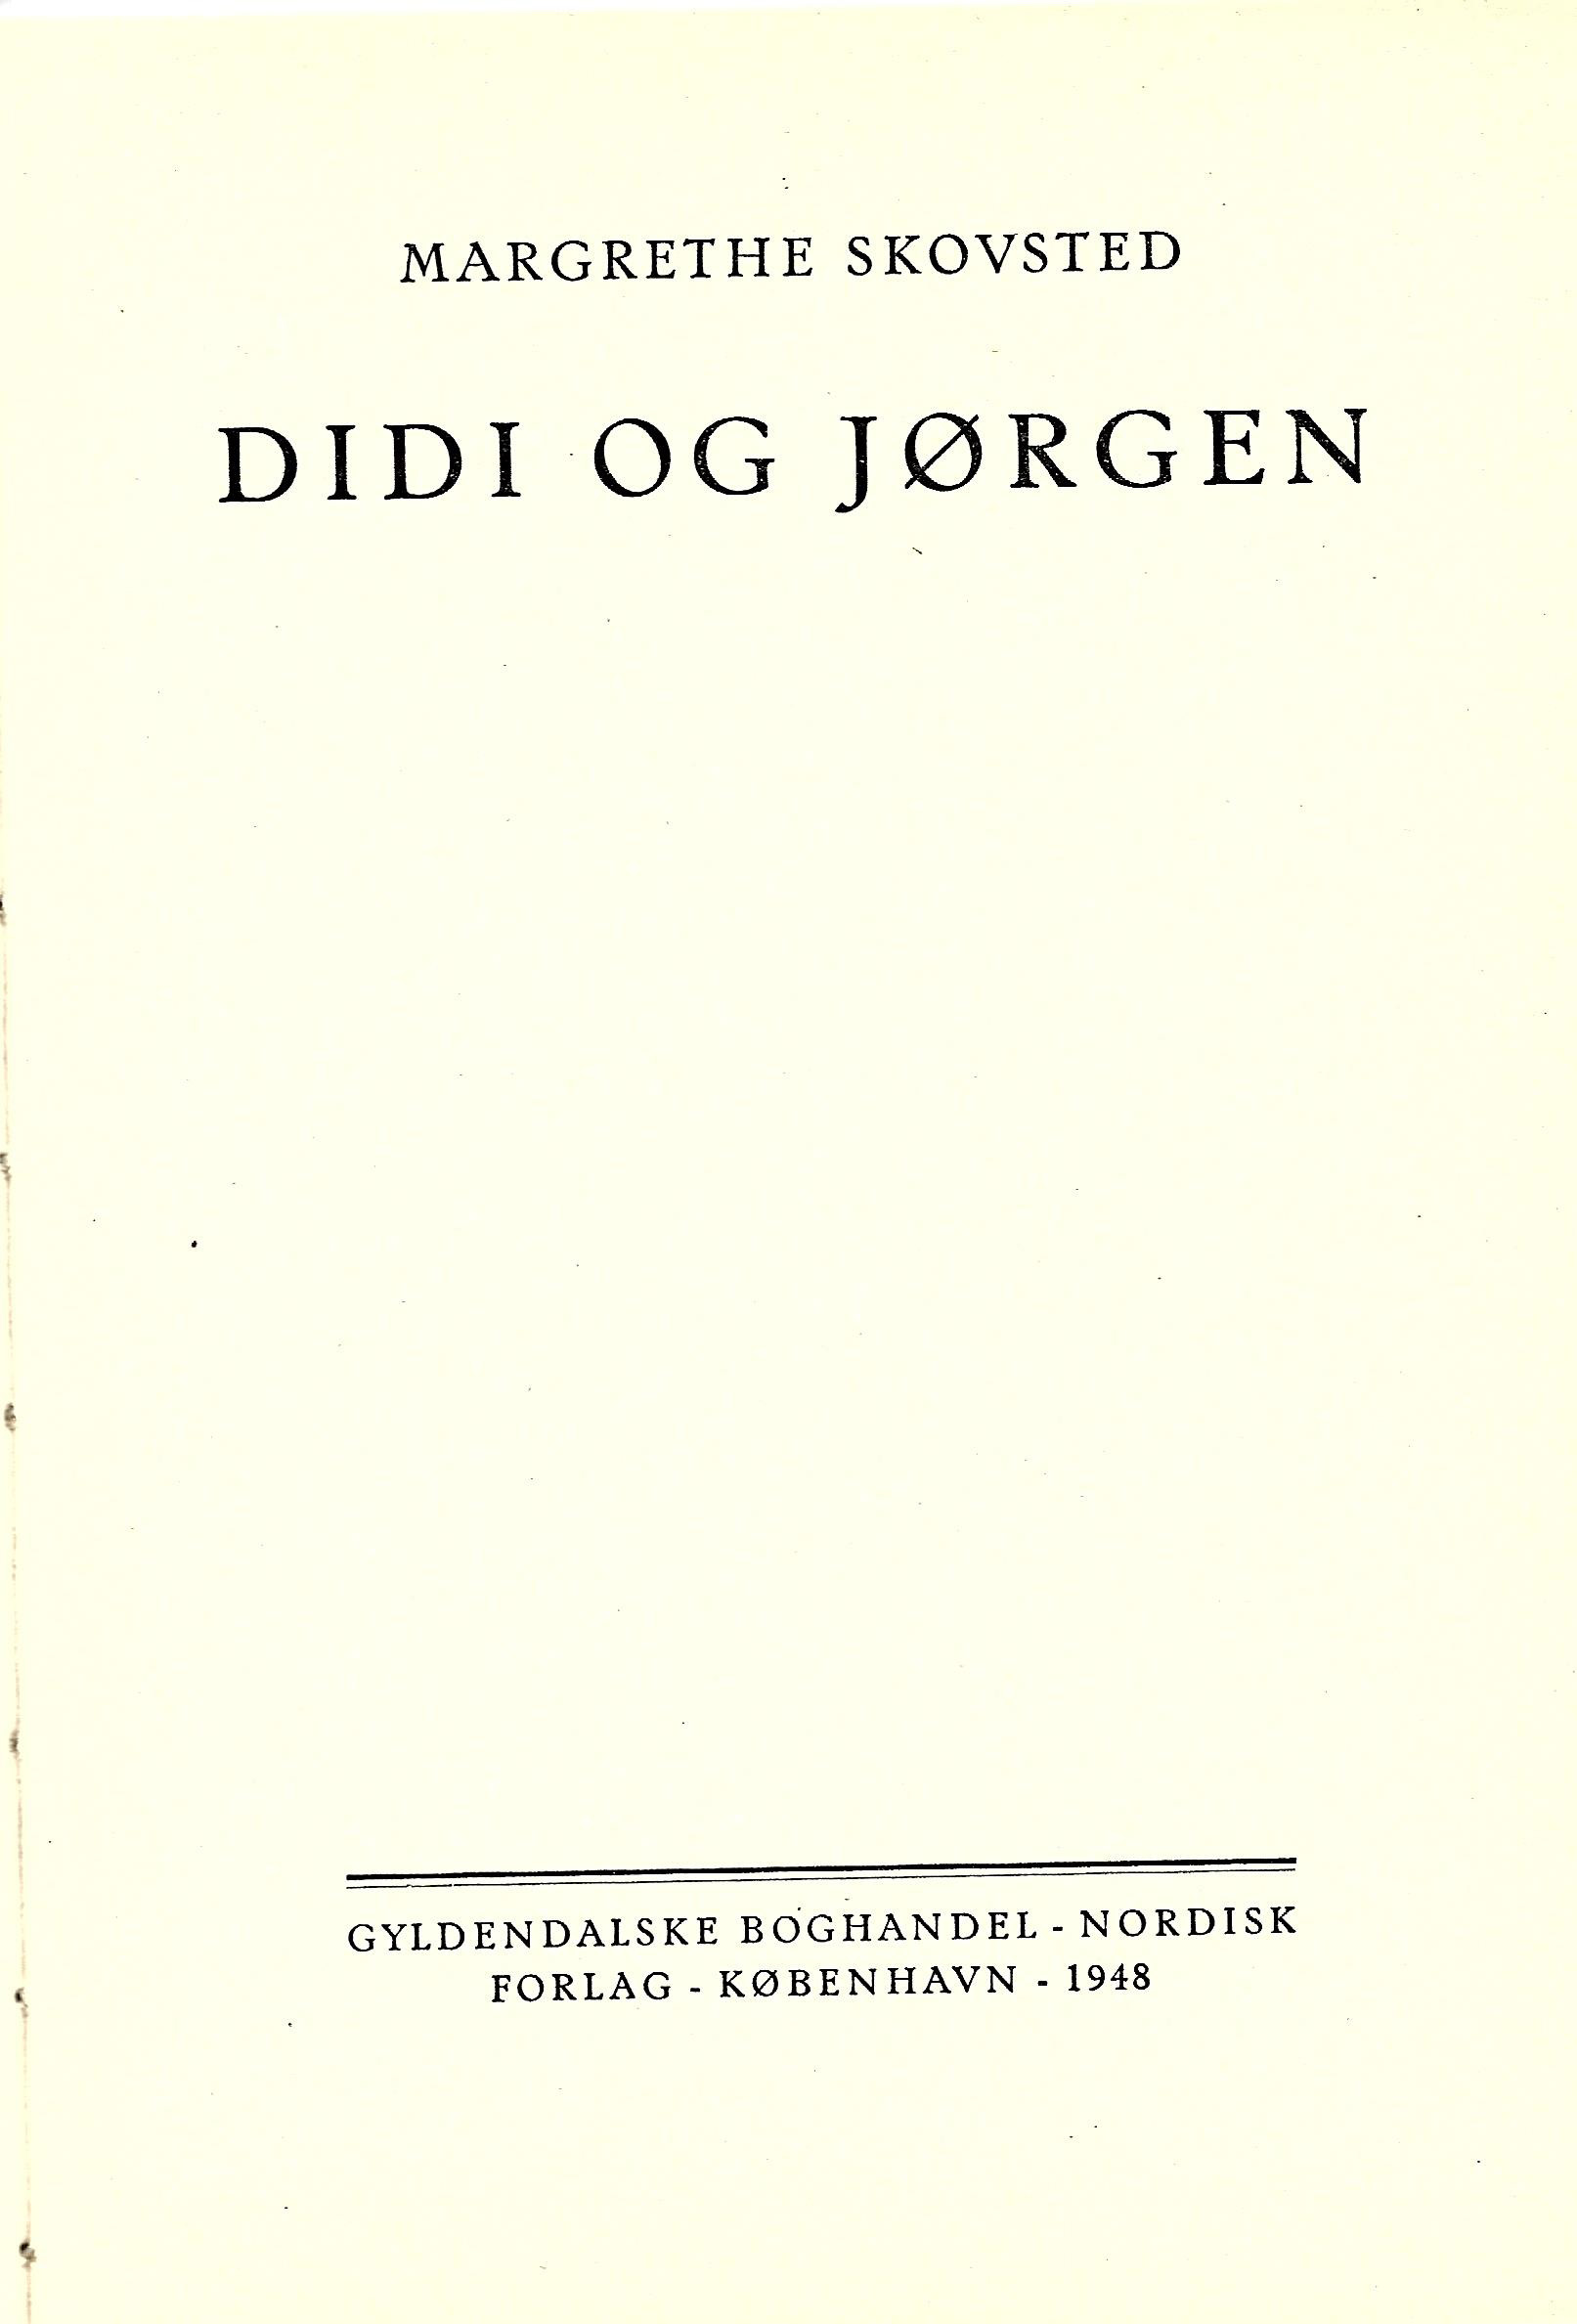 Didi og Jørgen - Margrethe Skovsted 1948-1